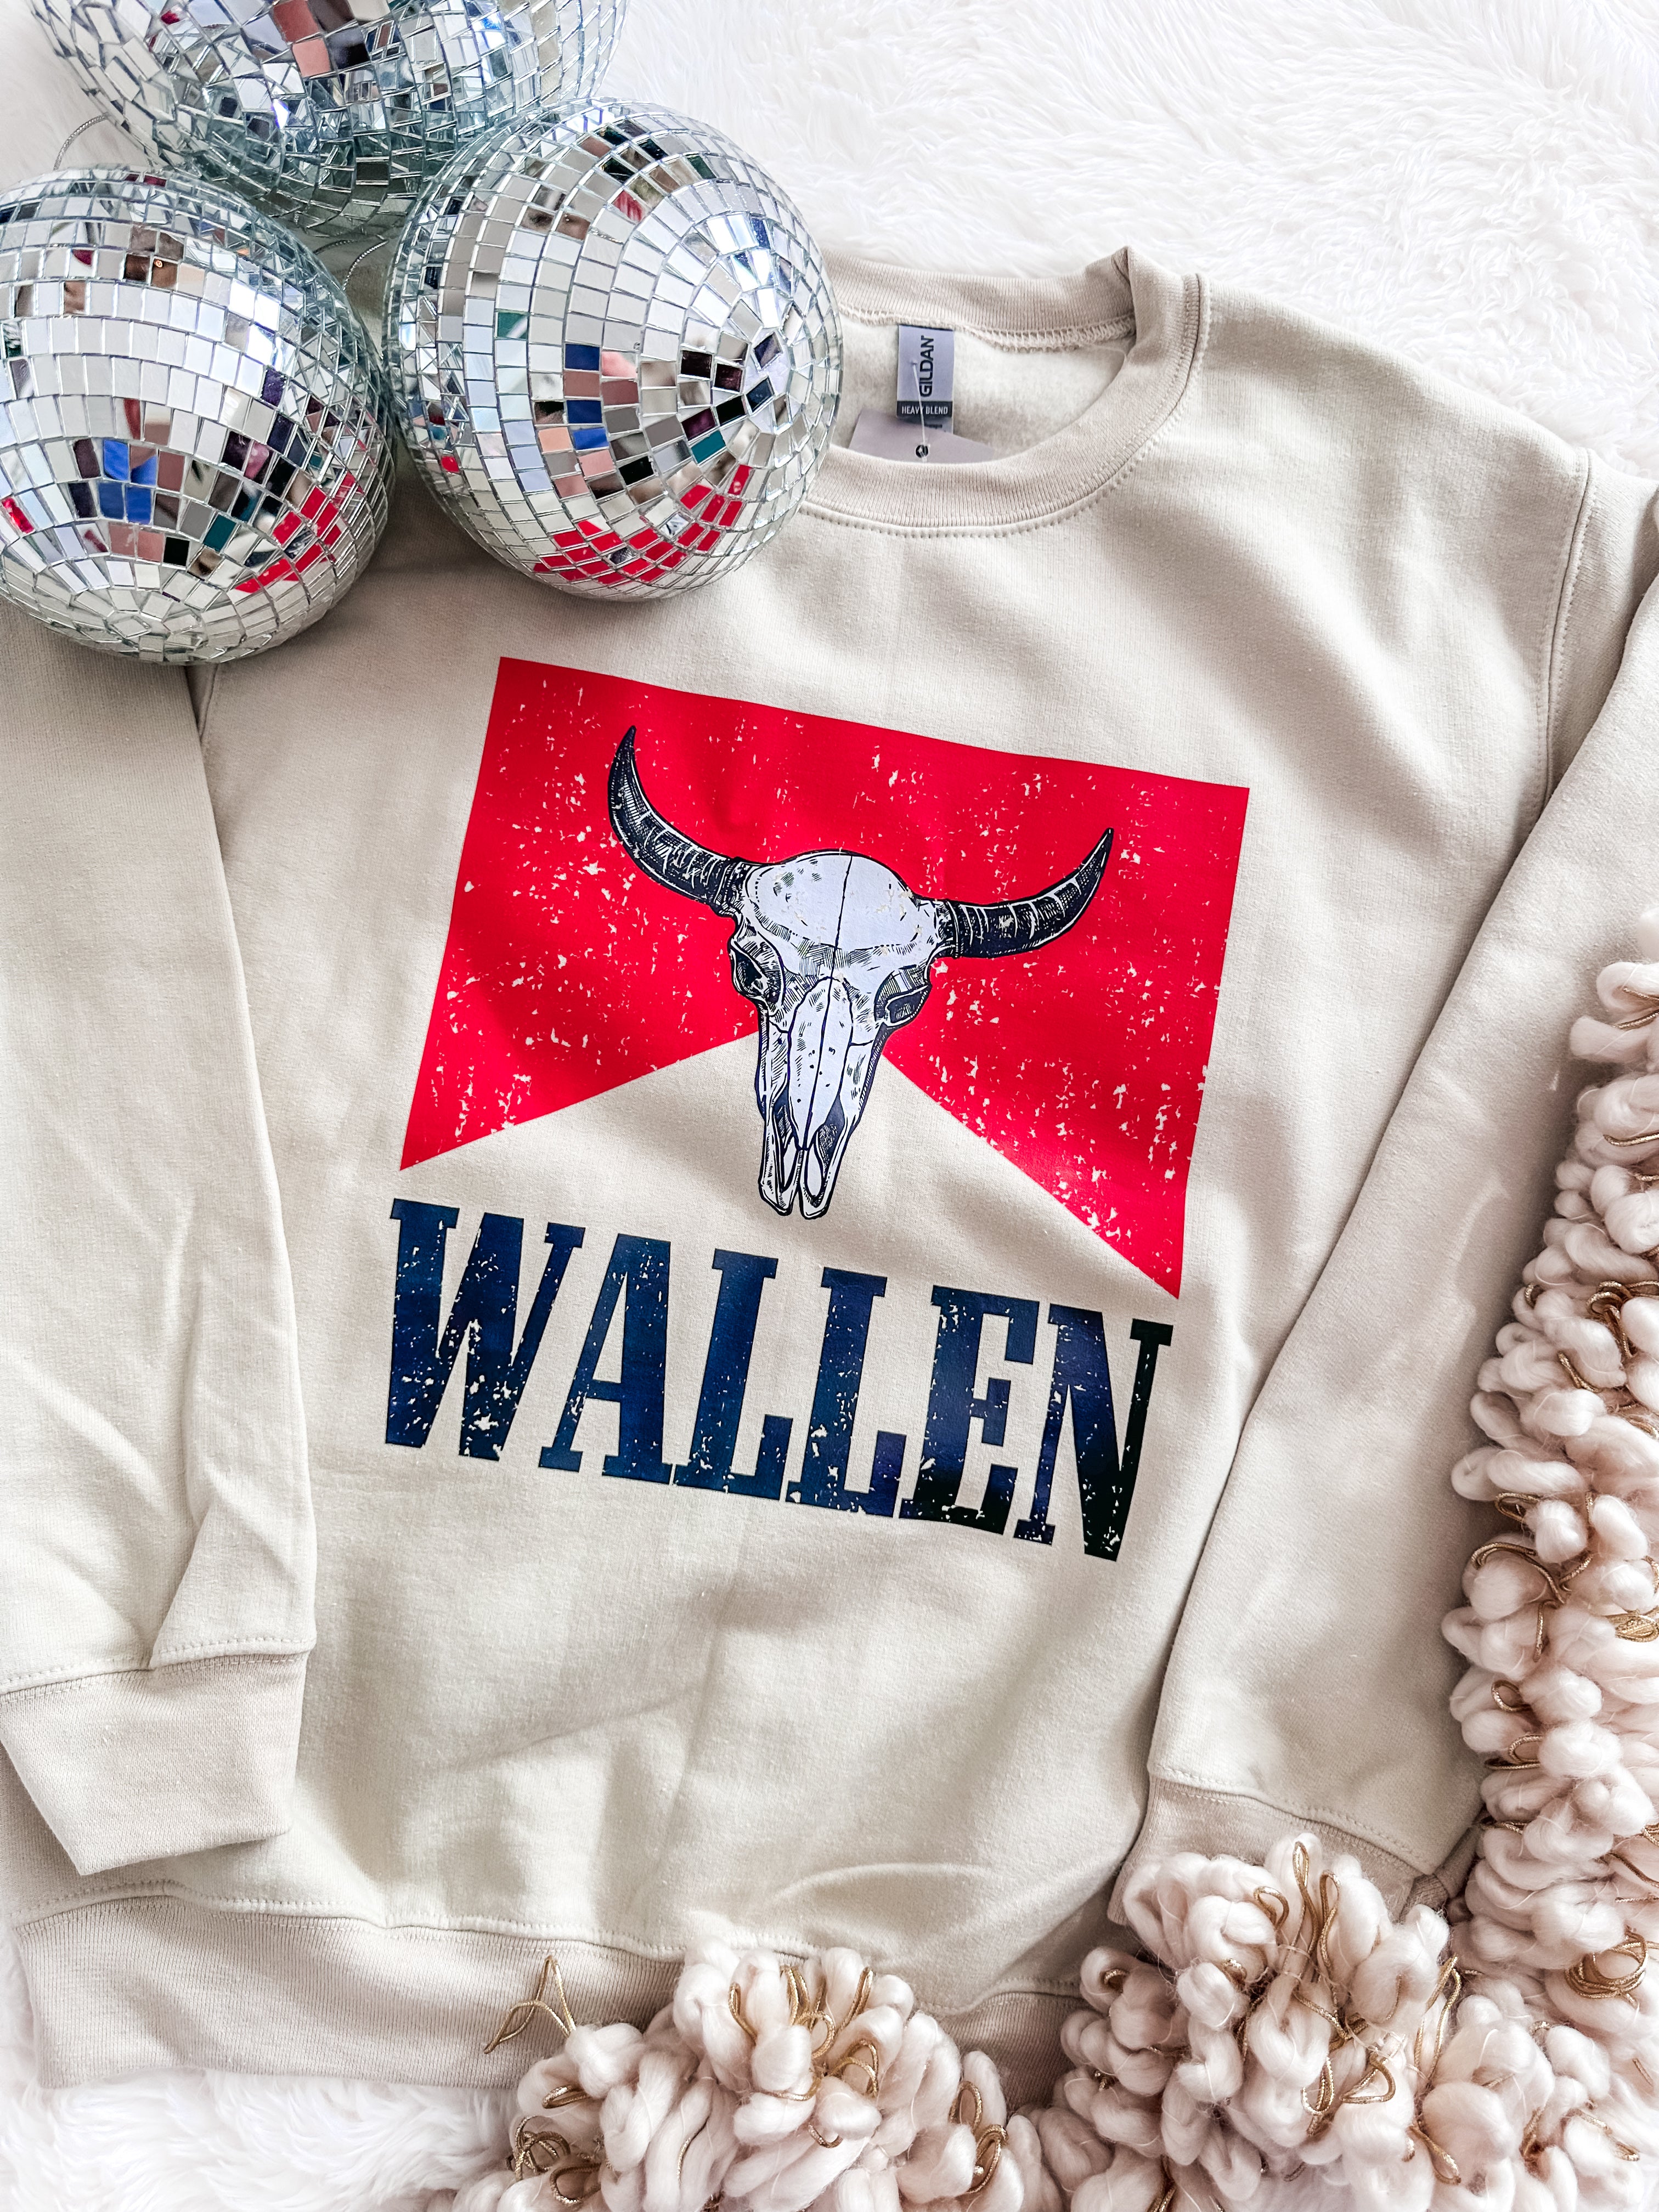 Wallen Sweatshirt-The 706 Wholesale-Trendsetter Online Boutique